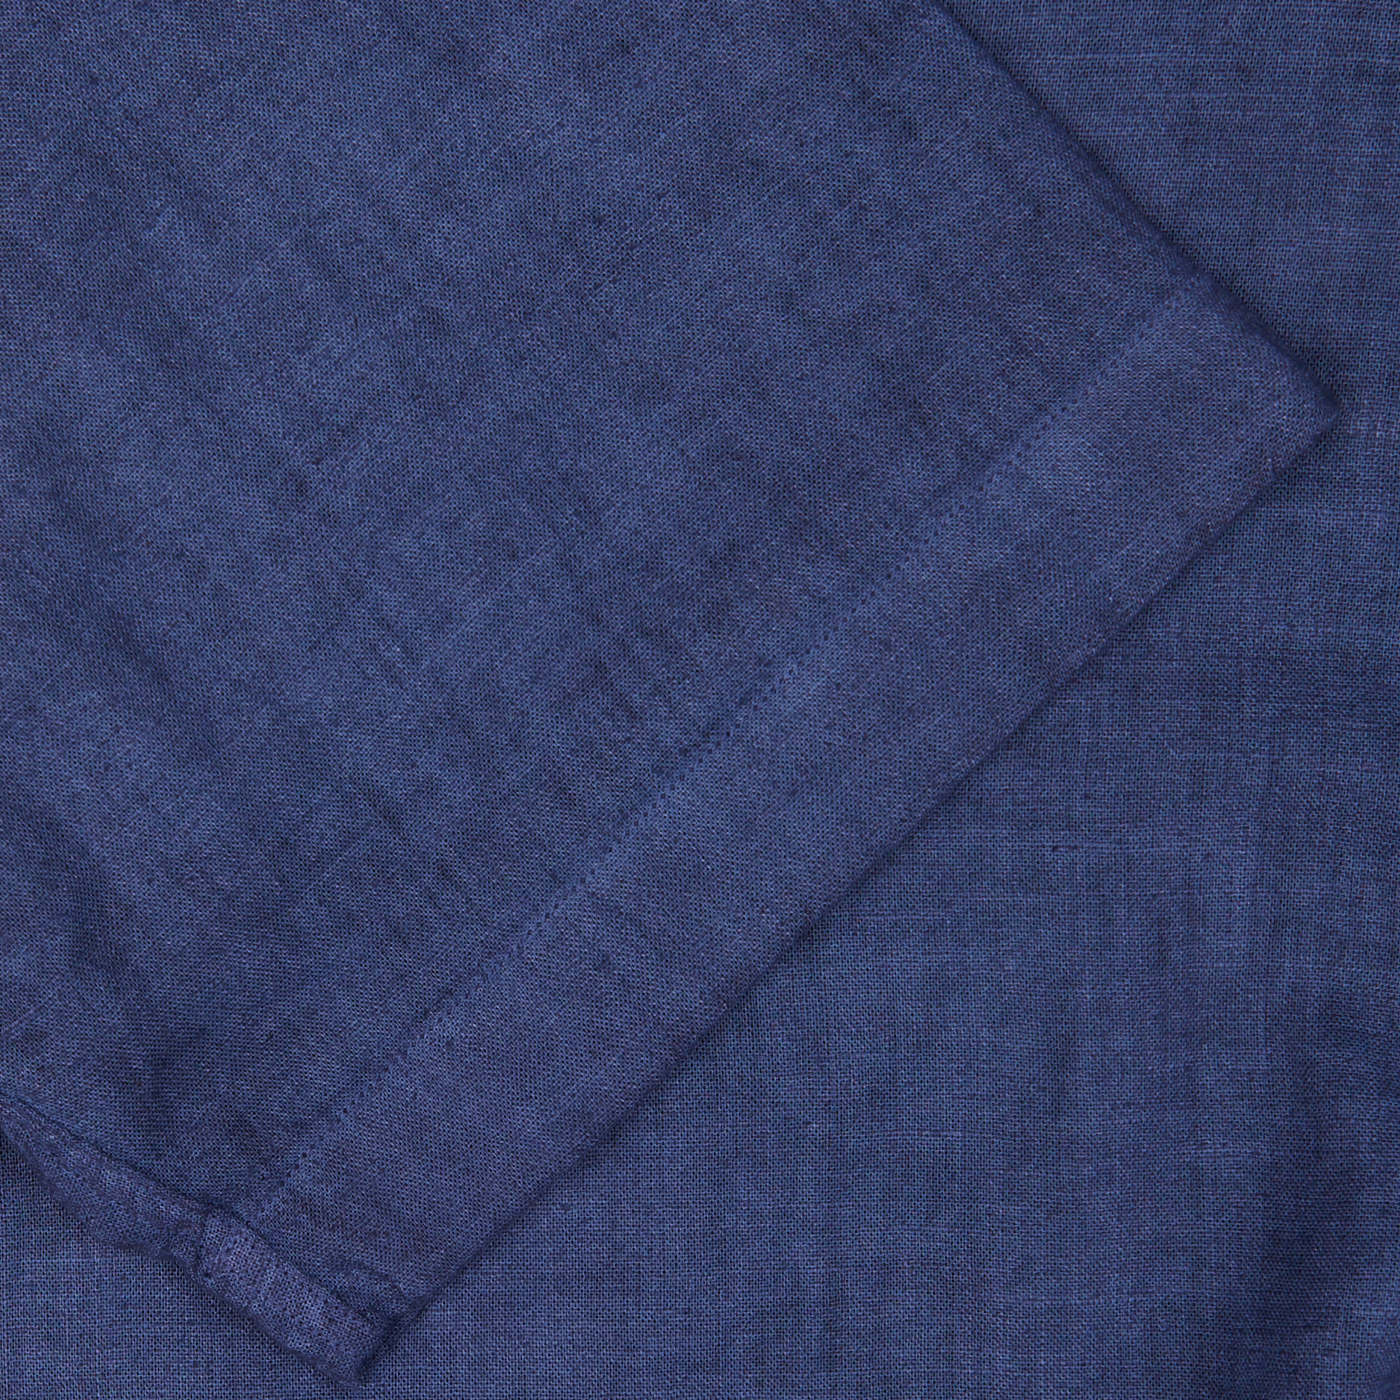 Close-up of a Altea dark blue linen blend open collar shirt fabric texture with visible woven details, a summer essential.